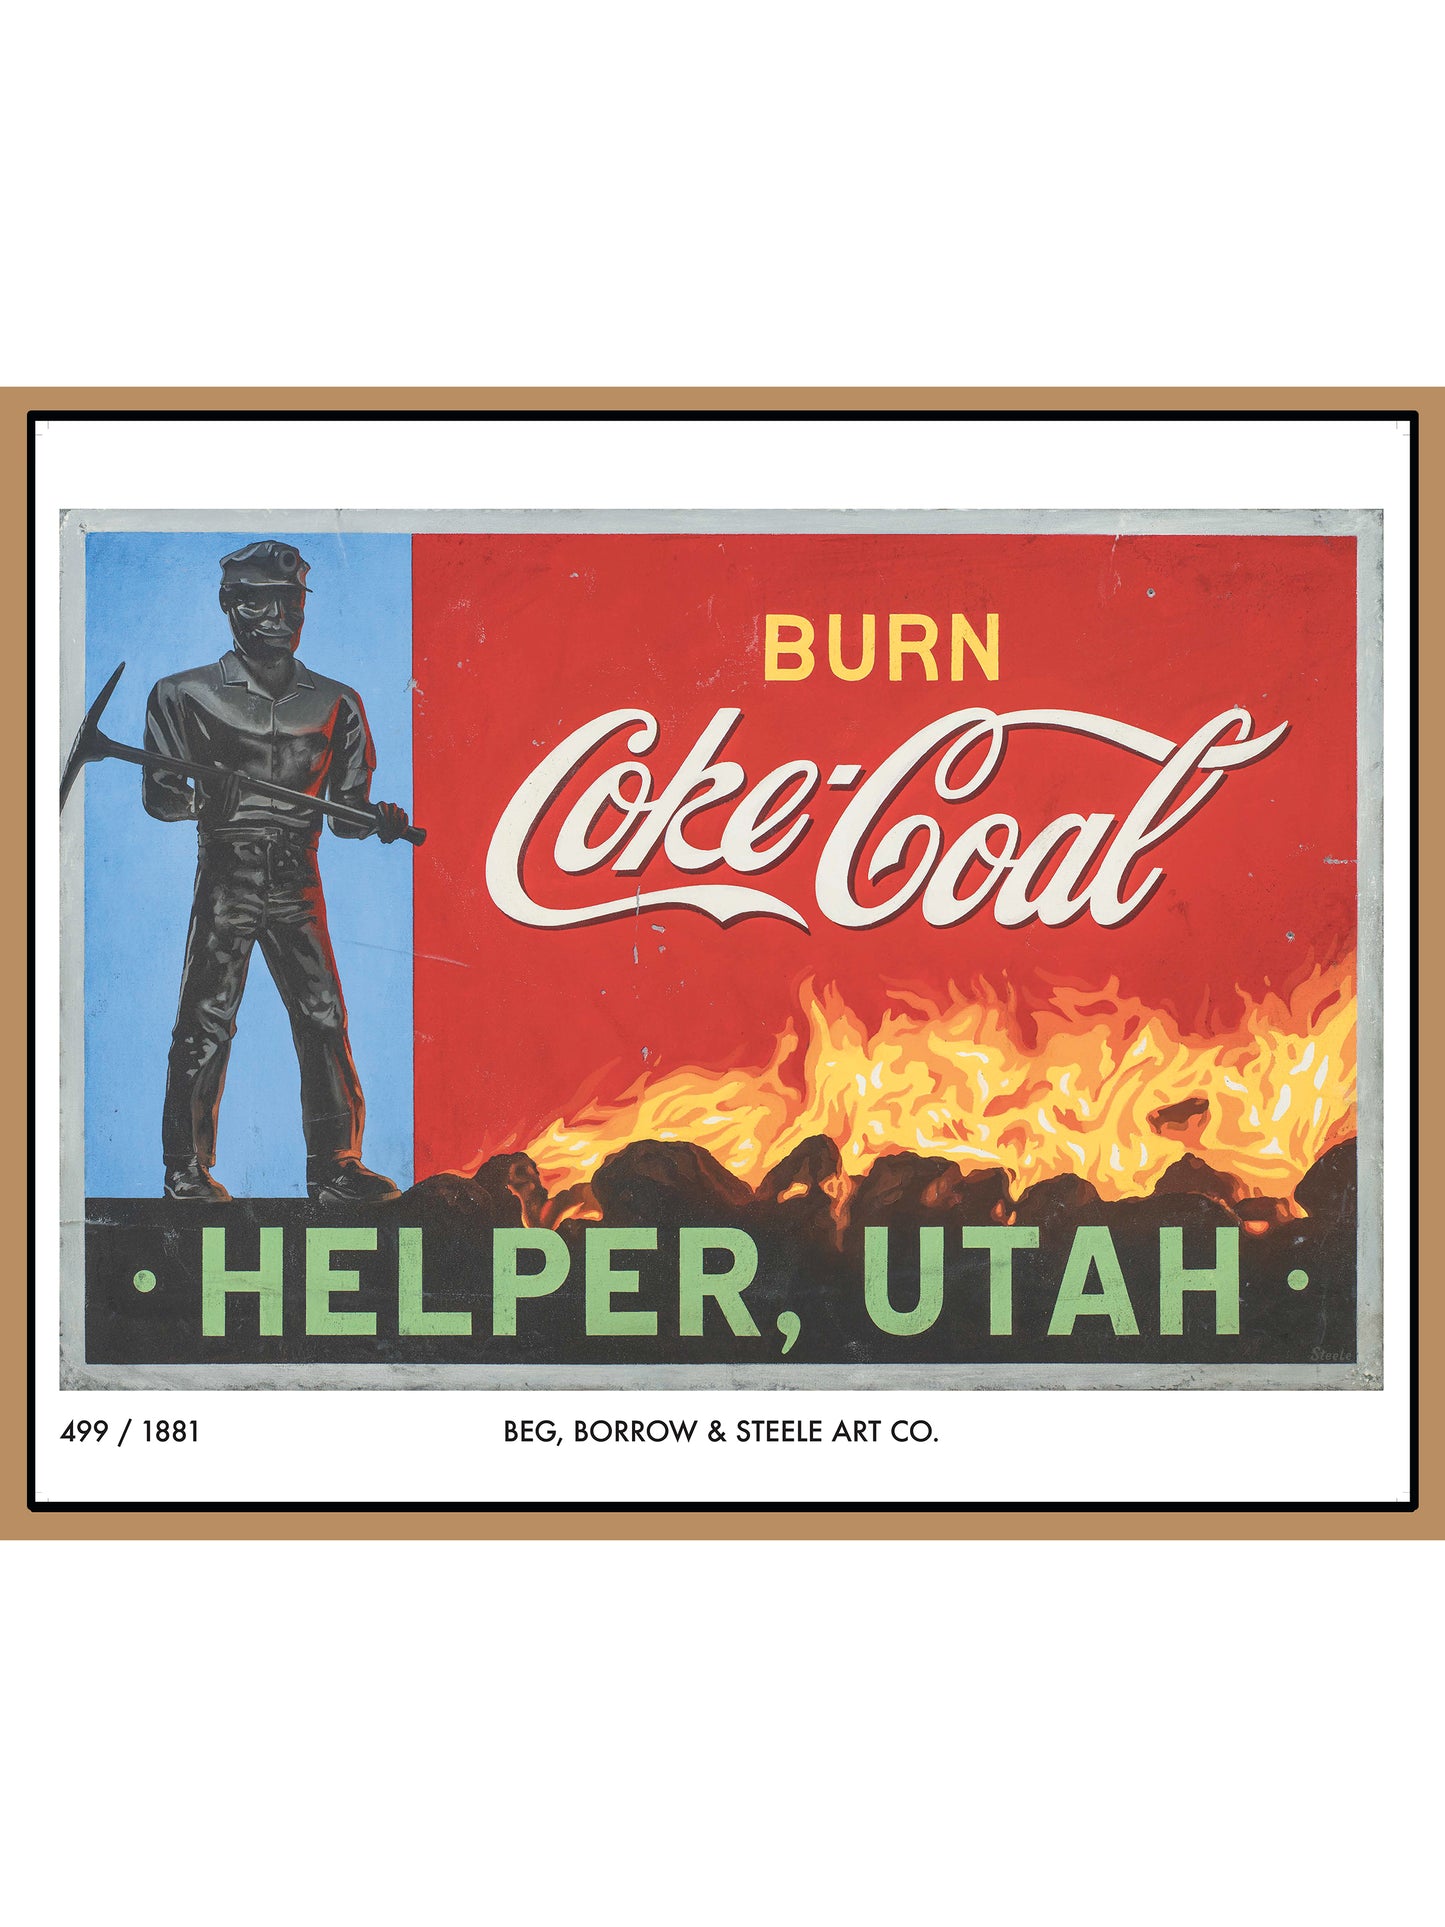 Burn Coke Coal Print